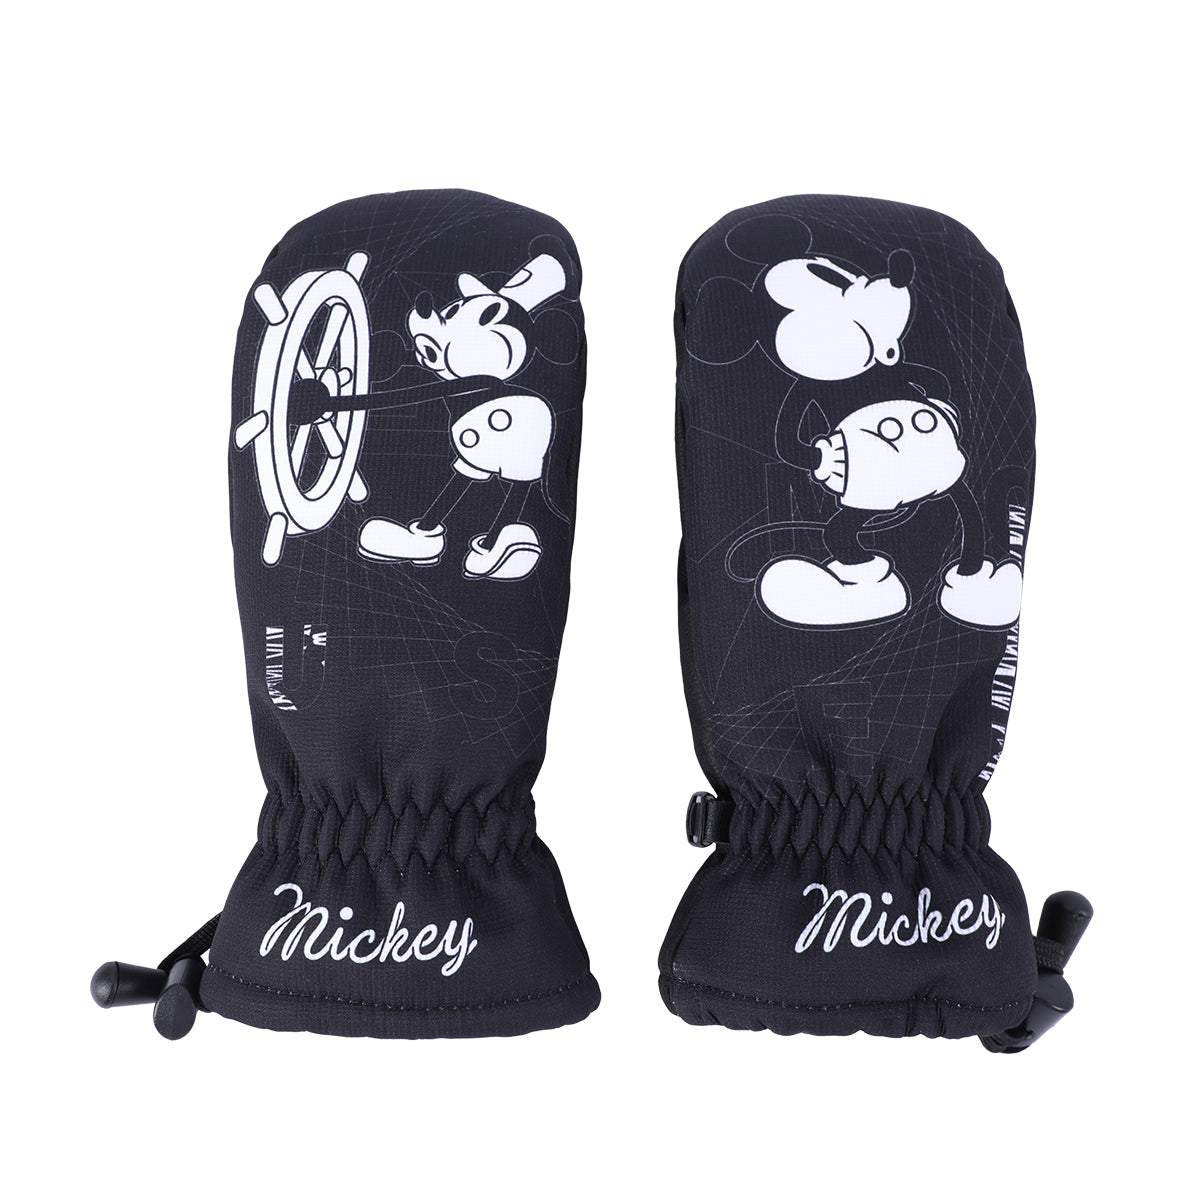 Disney Mickey/Frozen Ski Gloves 21515